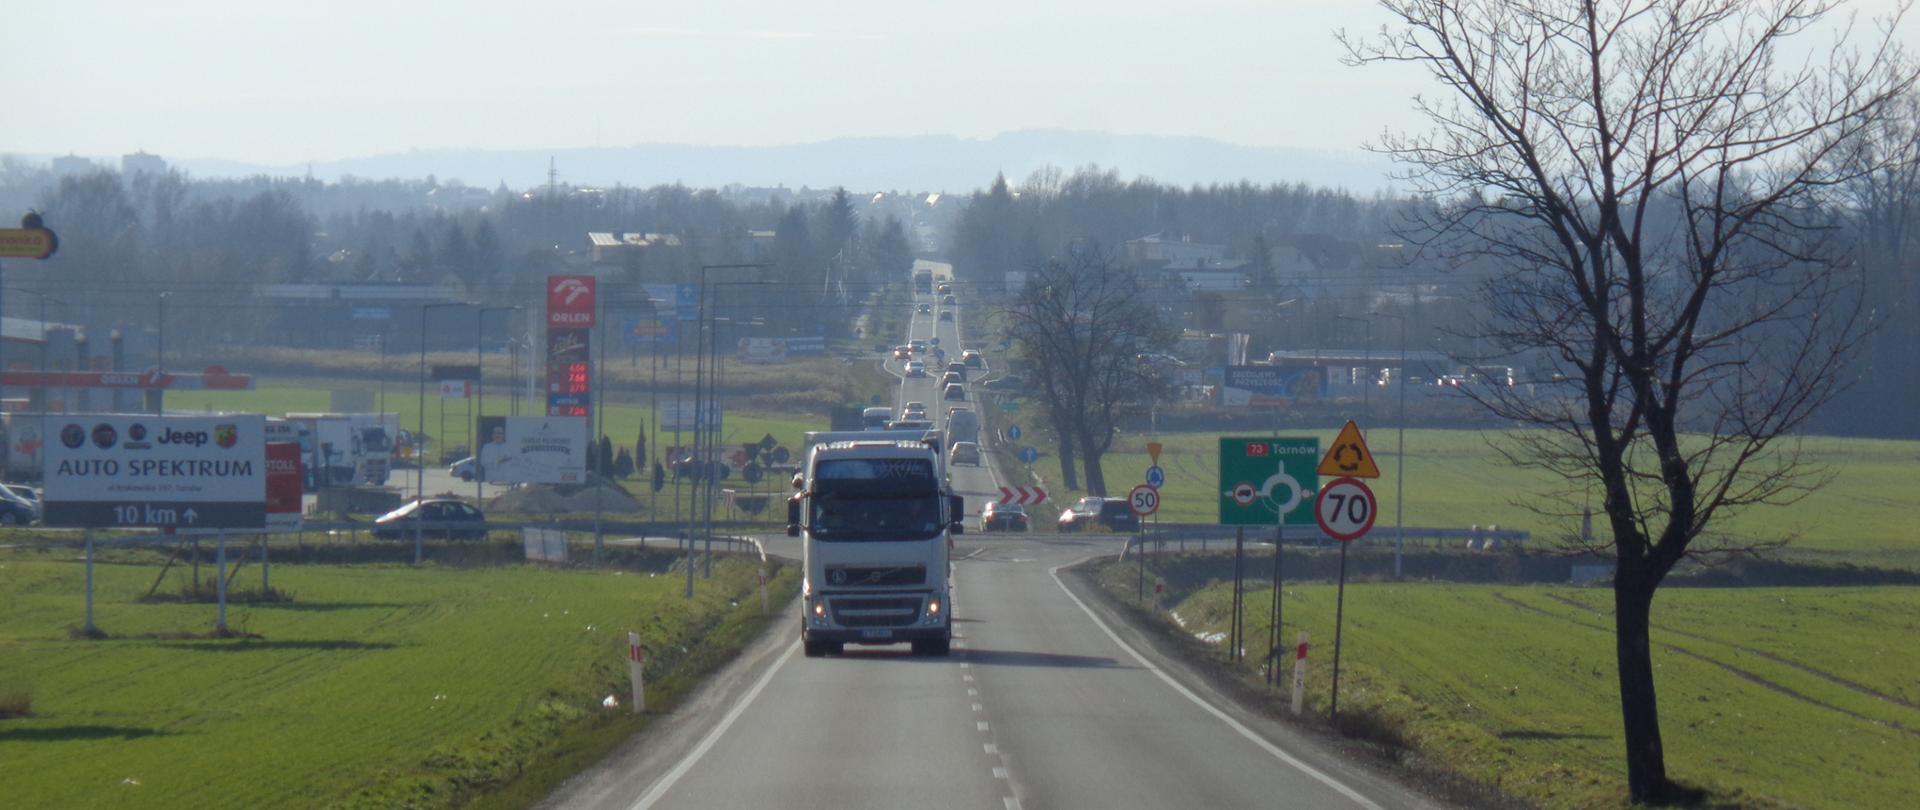 Jedna jezdnia po jednym pasie ruchu w każdym kierunku. Widoczne rondo z oznakowaniem na DK73 w kierunku Tarnowa. Po lewej stronie stacja benzynowa.